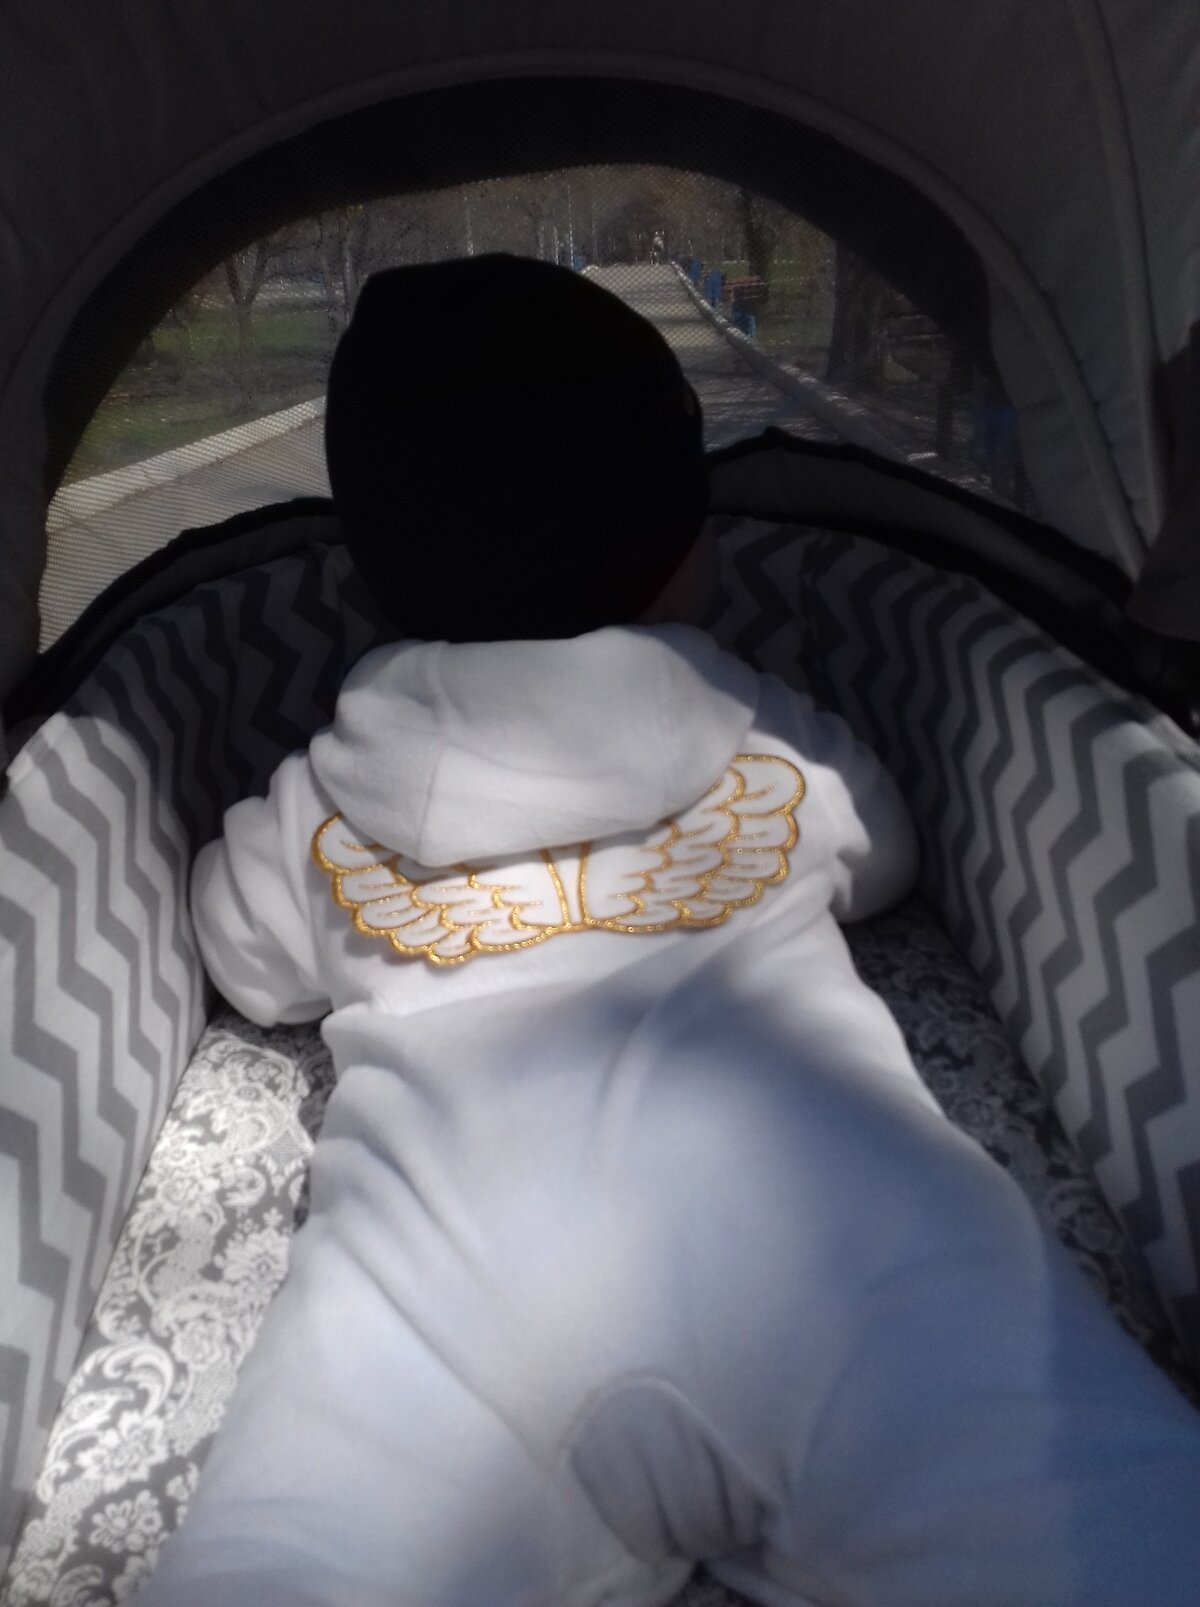 Обожаю эту фотку 🥰 Велюровый комбез-"человечек" - это идеальная одежда для малыша! Удобно надевать, тепло и уютно! А уж восхищённые взгляды прохожих 😍 это дополнительный приятный бонус!)